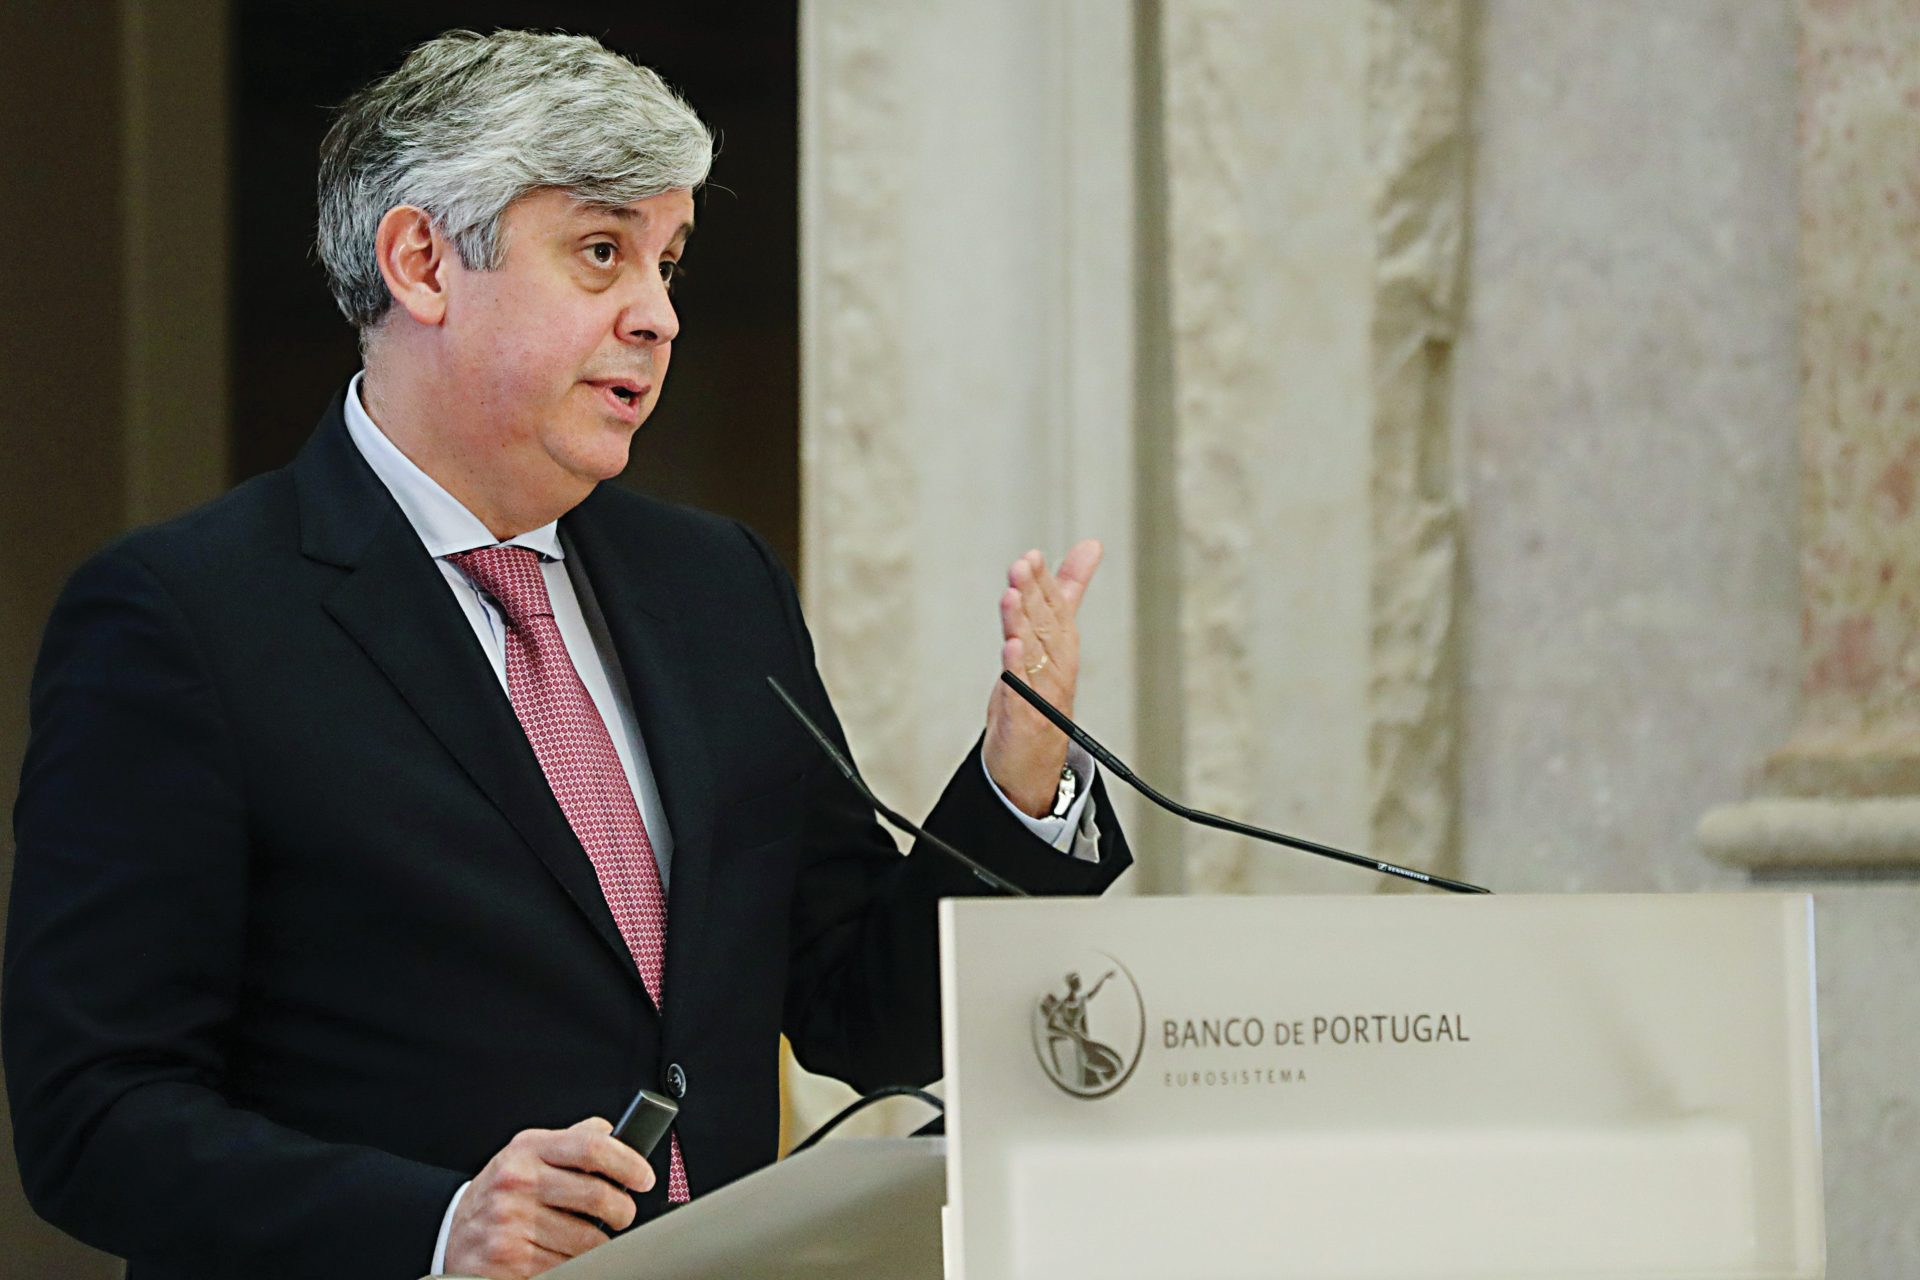 Riscos para a estabilidade financeira aumentaram, diz Banco de Portugal